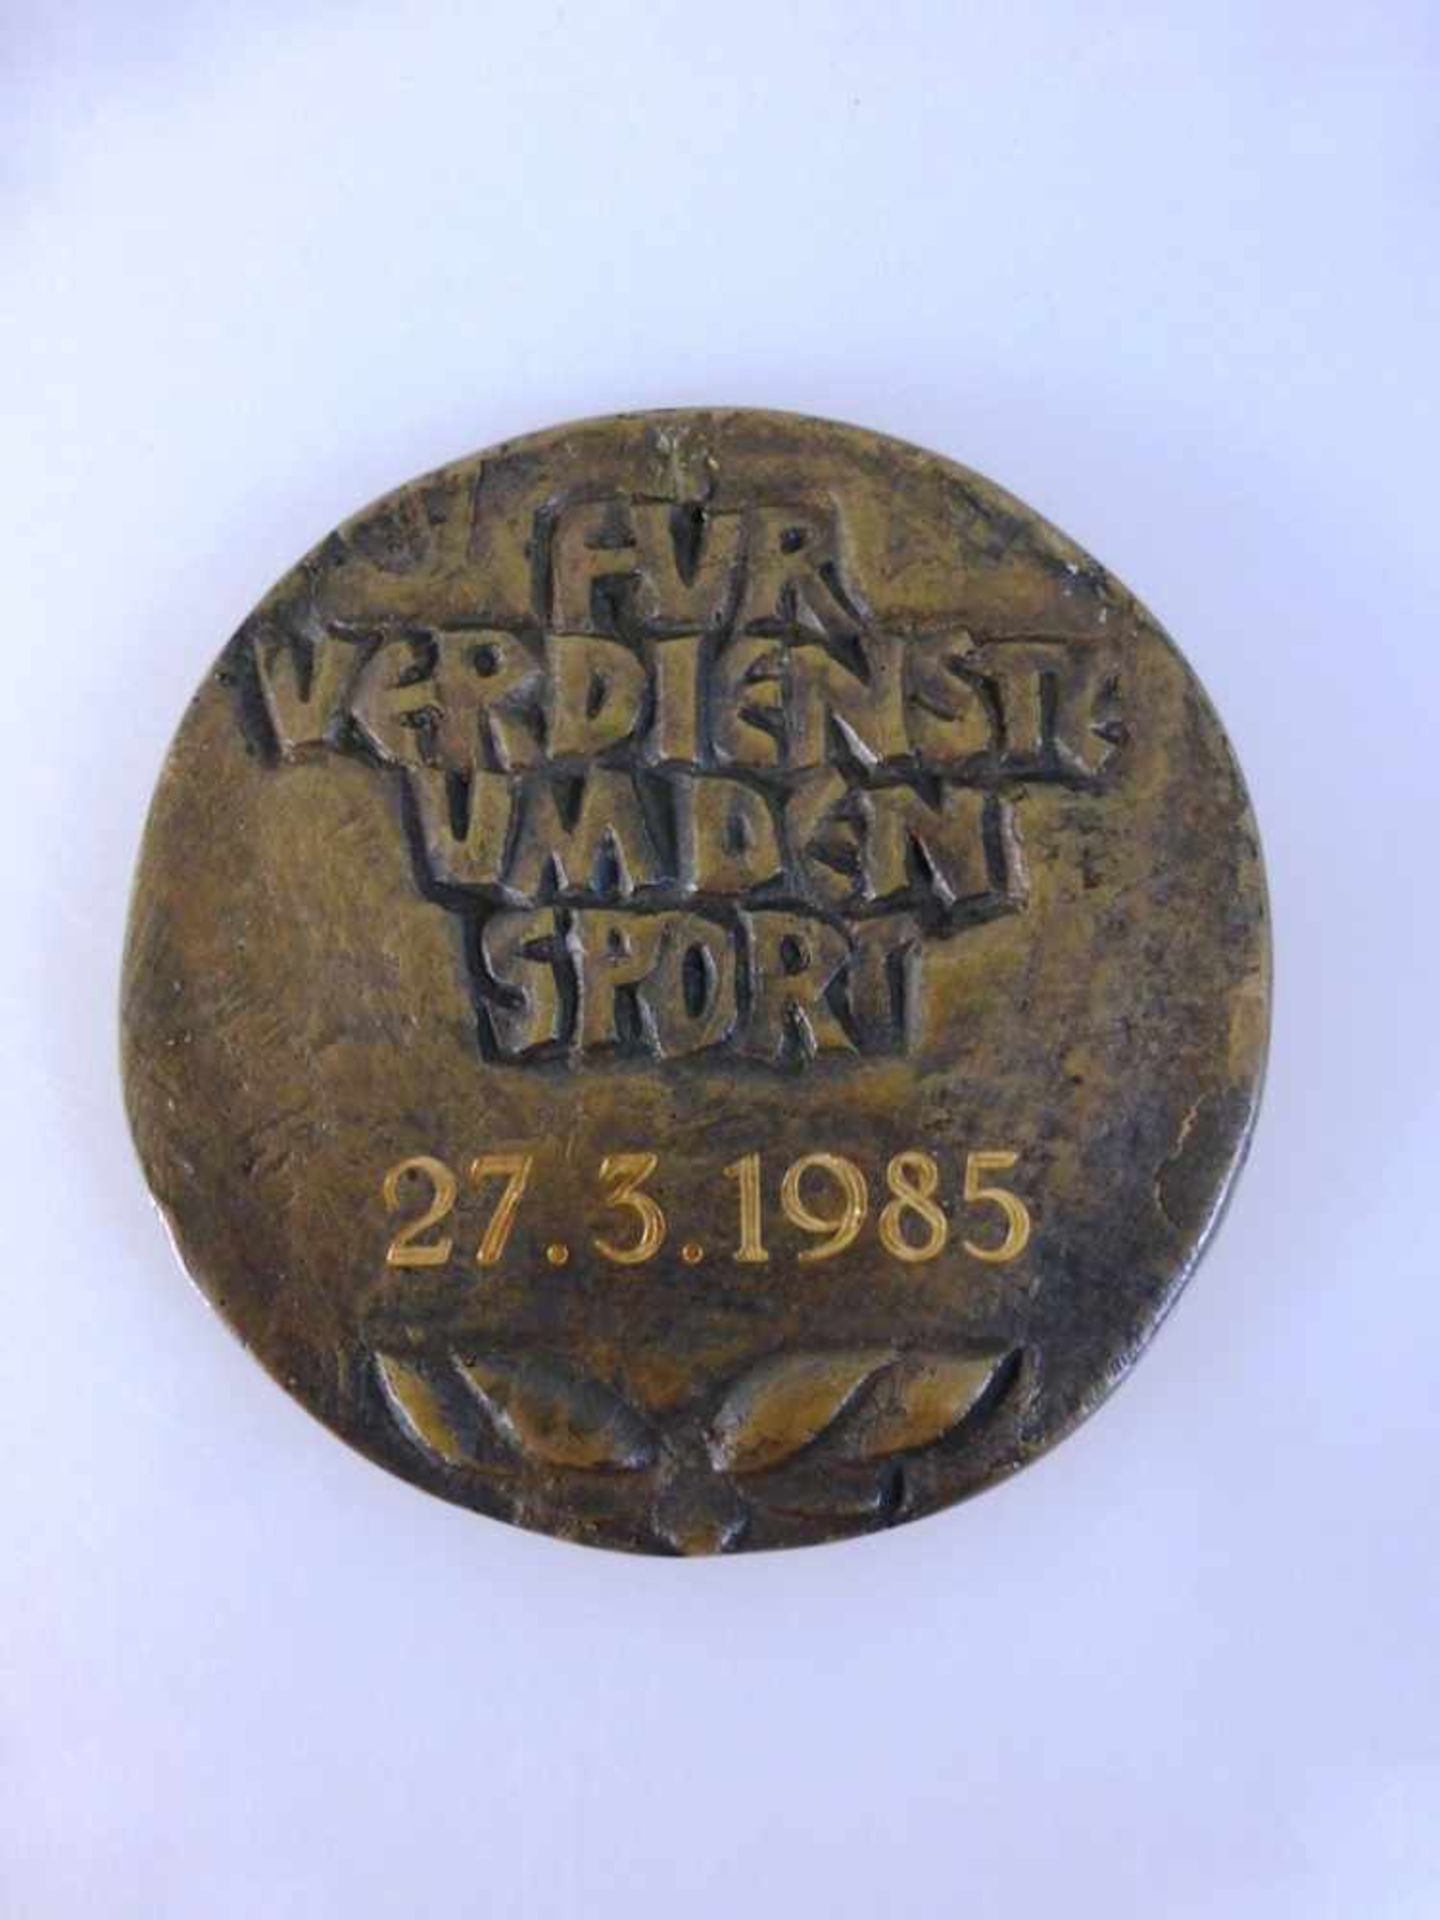 Carl Diem Medaille der Stadt Würzburg, "Für Verdienste um den Sport", Bronze, dat. 1985,d. - Bild 2 aus 2